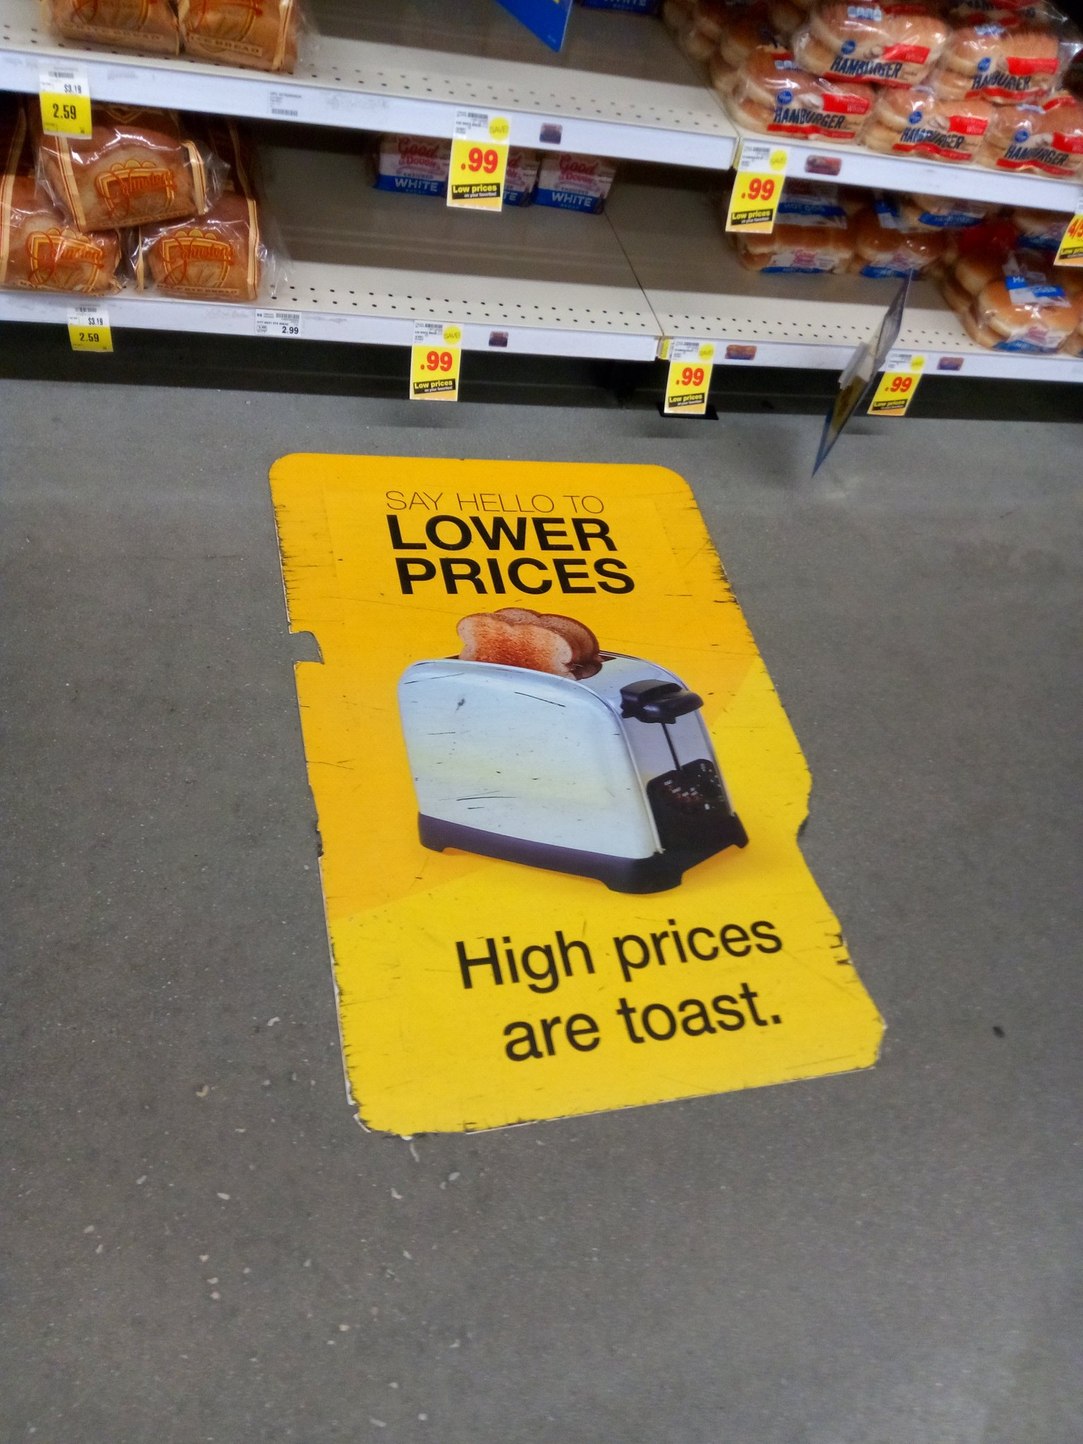 All toasters toast toast - meme